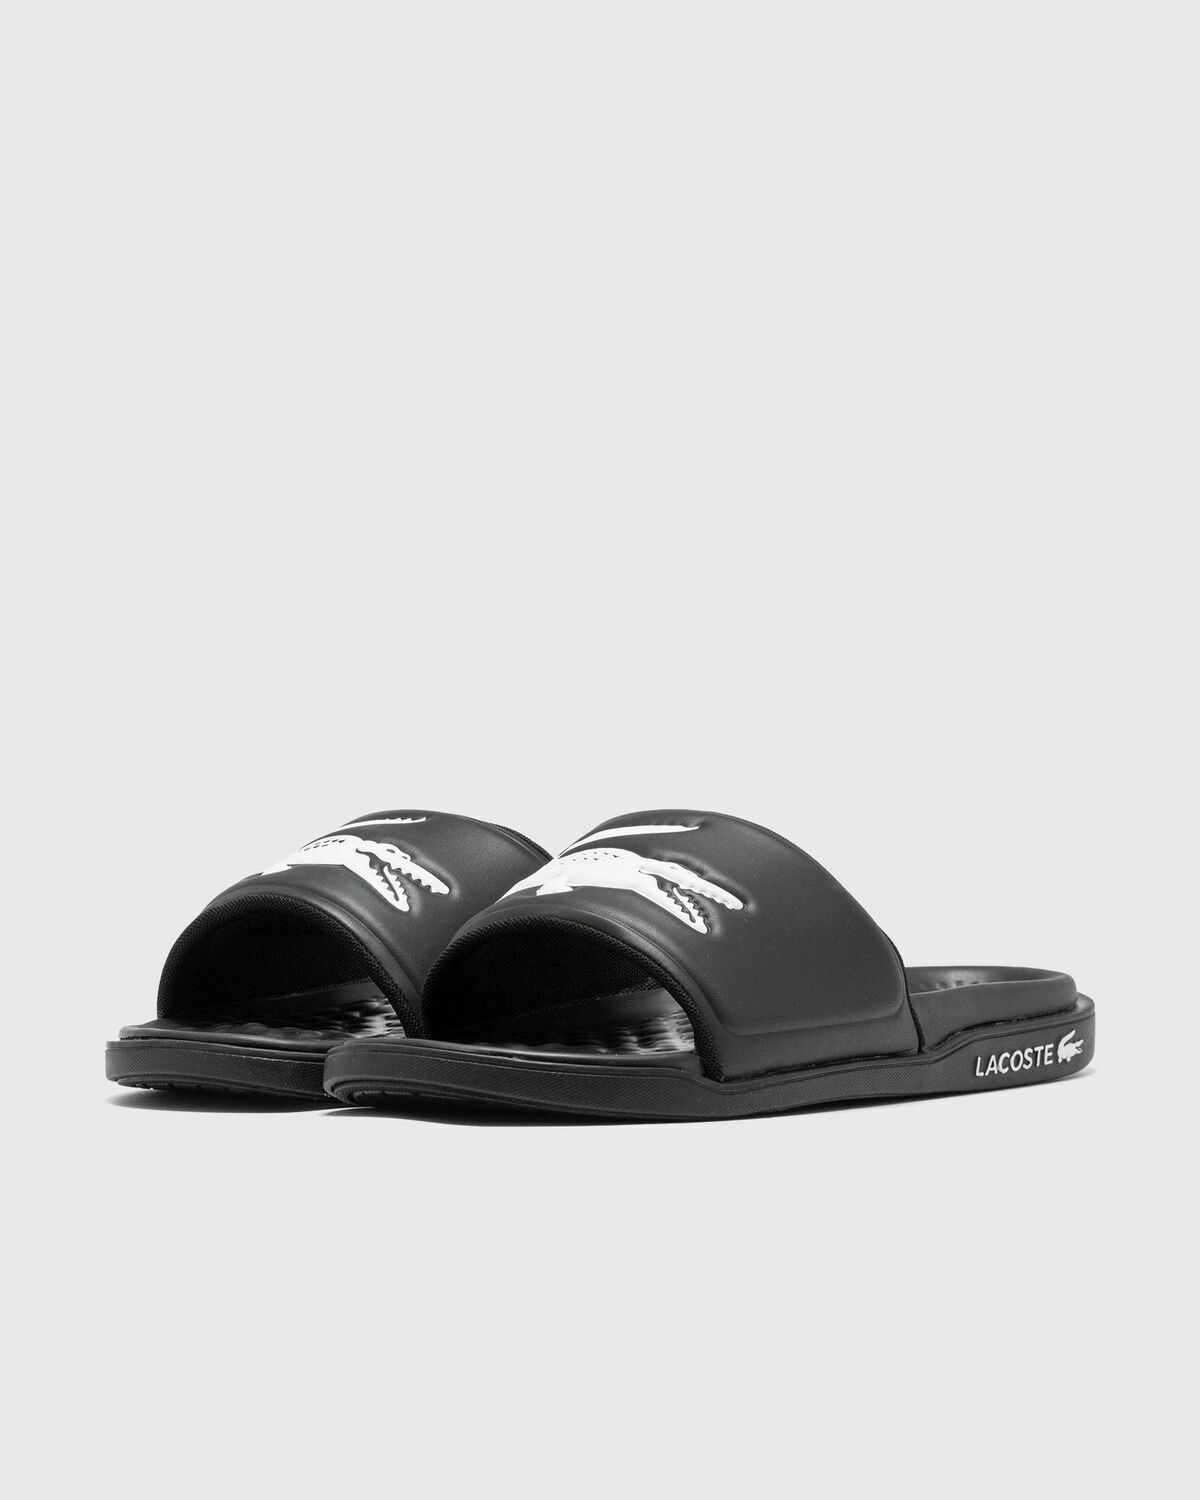 Lacoste Serve Slide Dual 09221 Cma Black - Mens - Sandals & Slides Lacoste